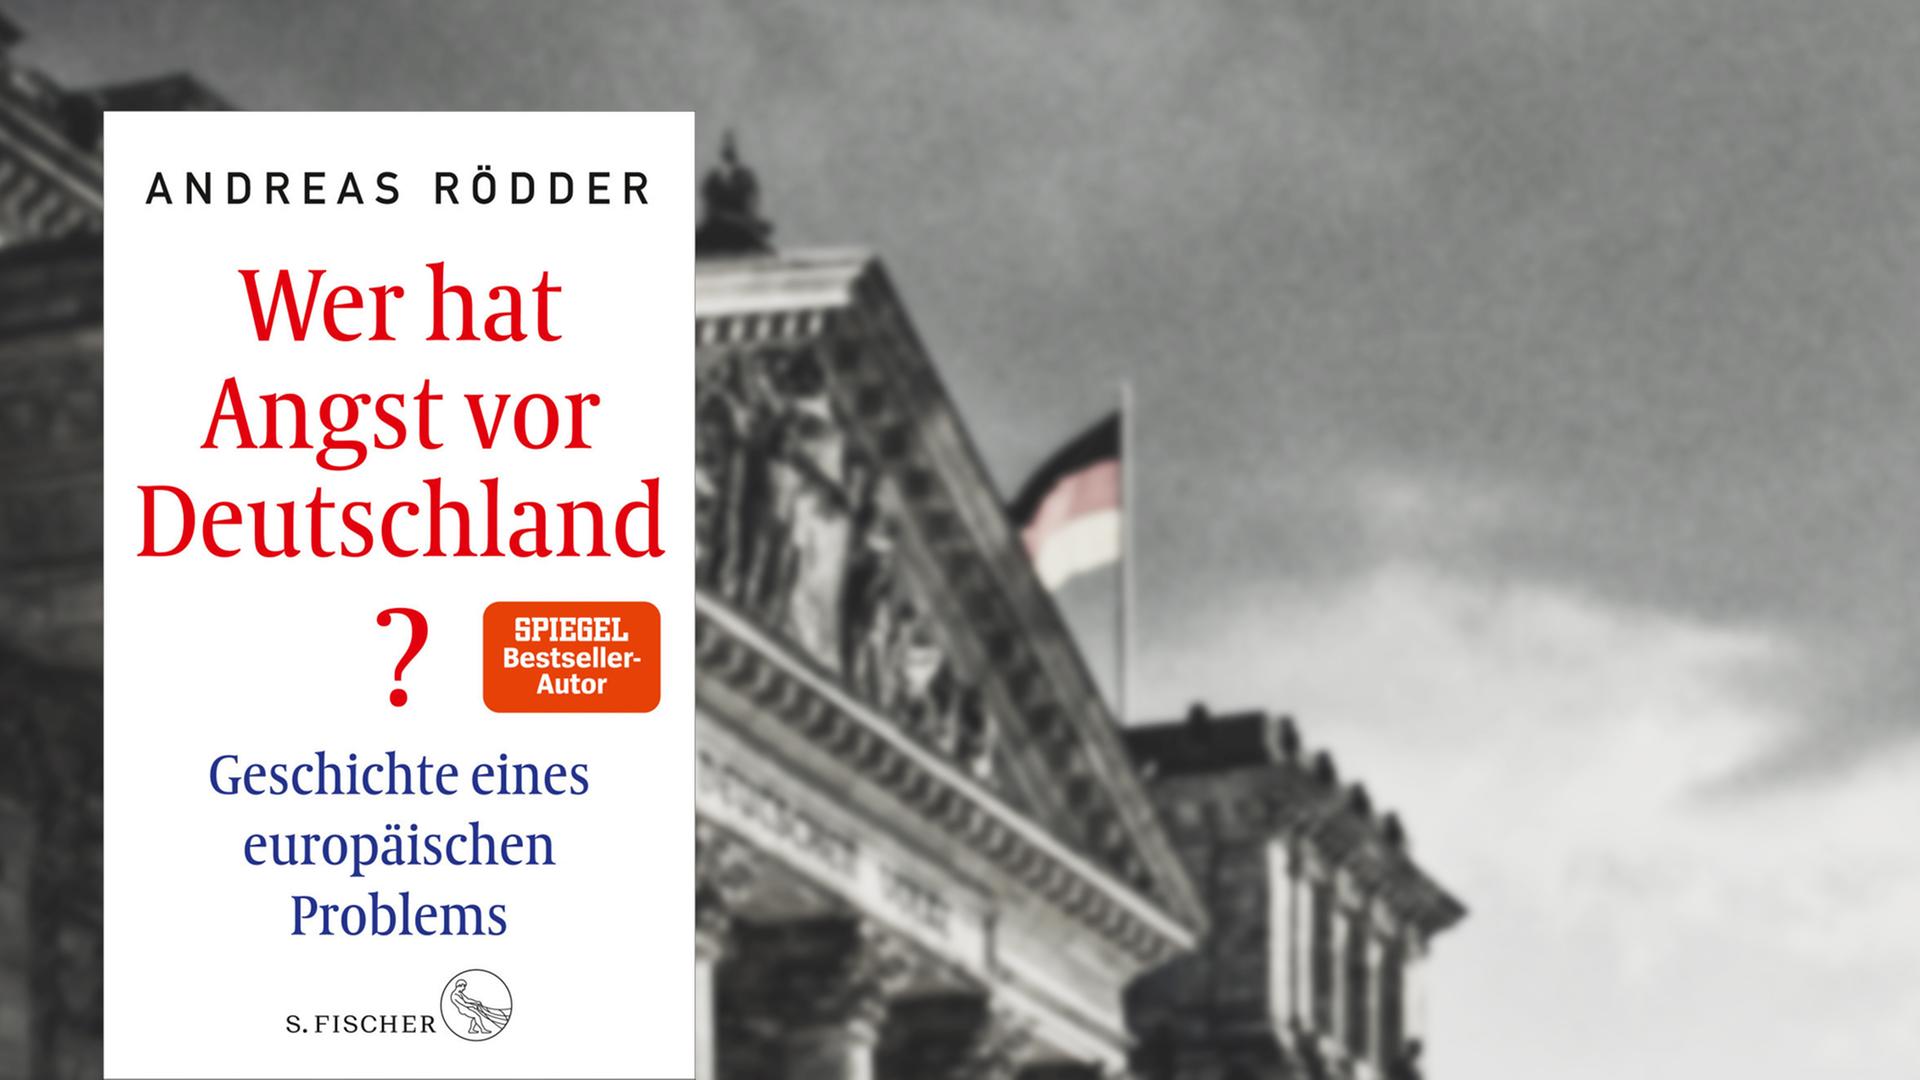 Buchcover, dahinter ein Bild des Reichstages.